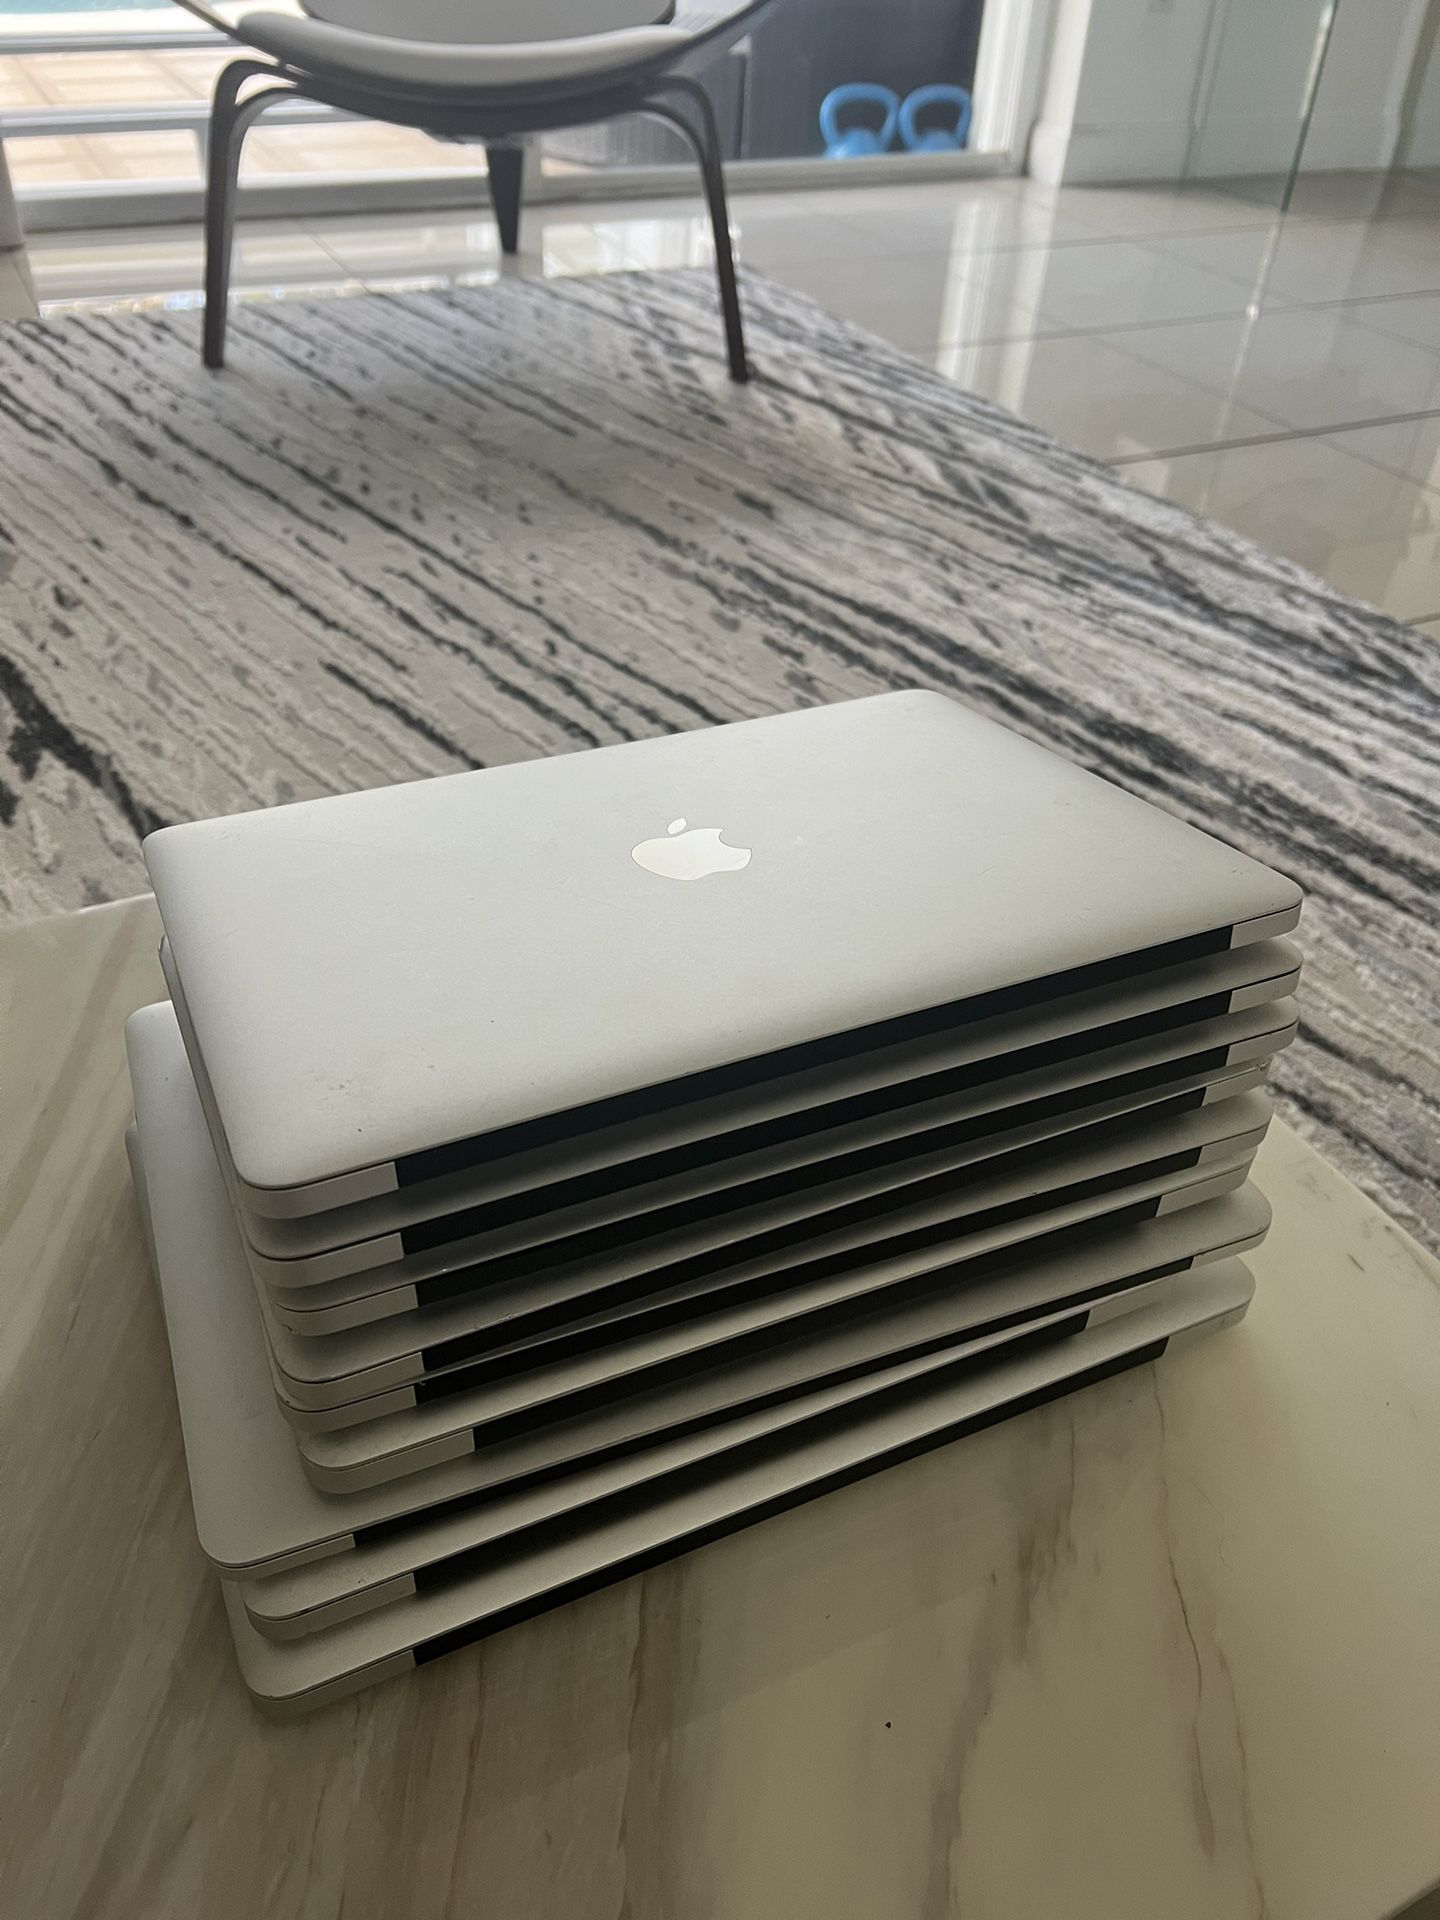 9 MacBooks 💻 